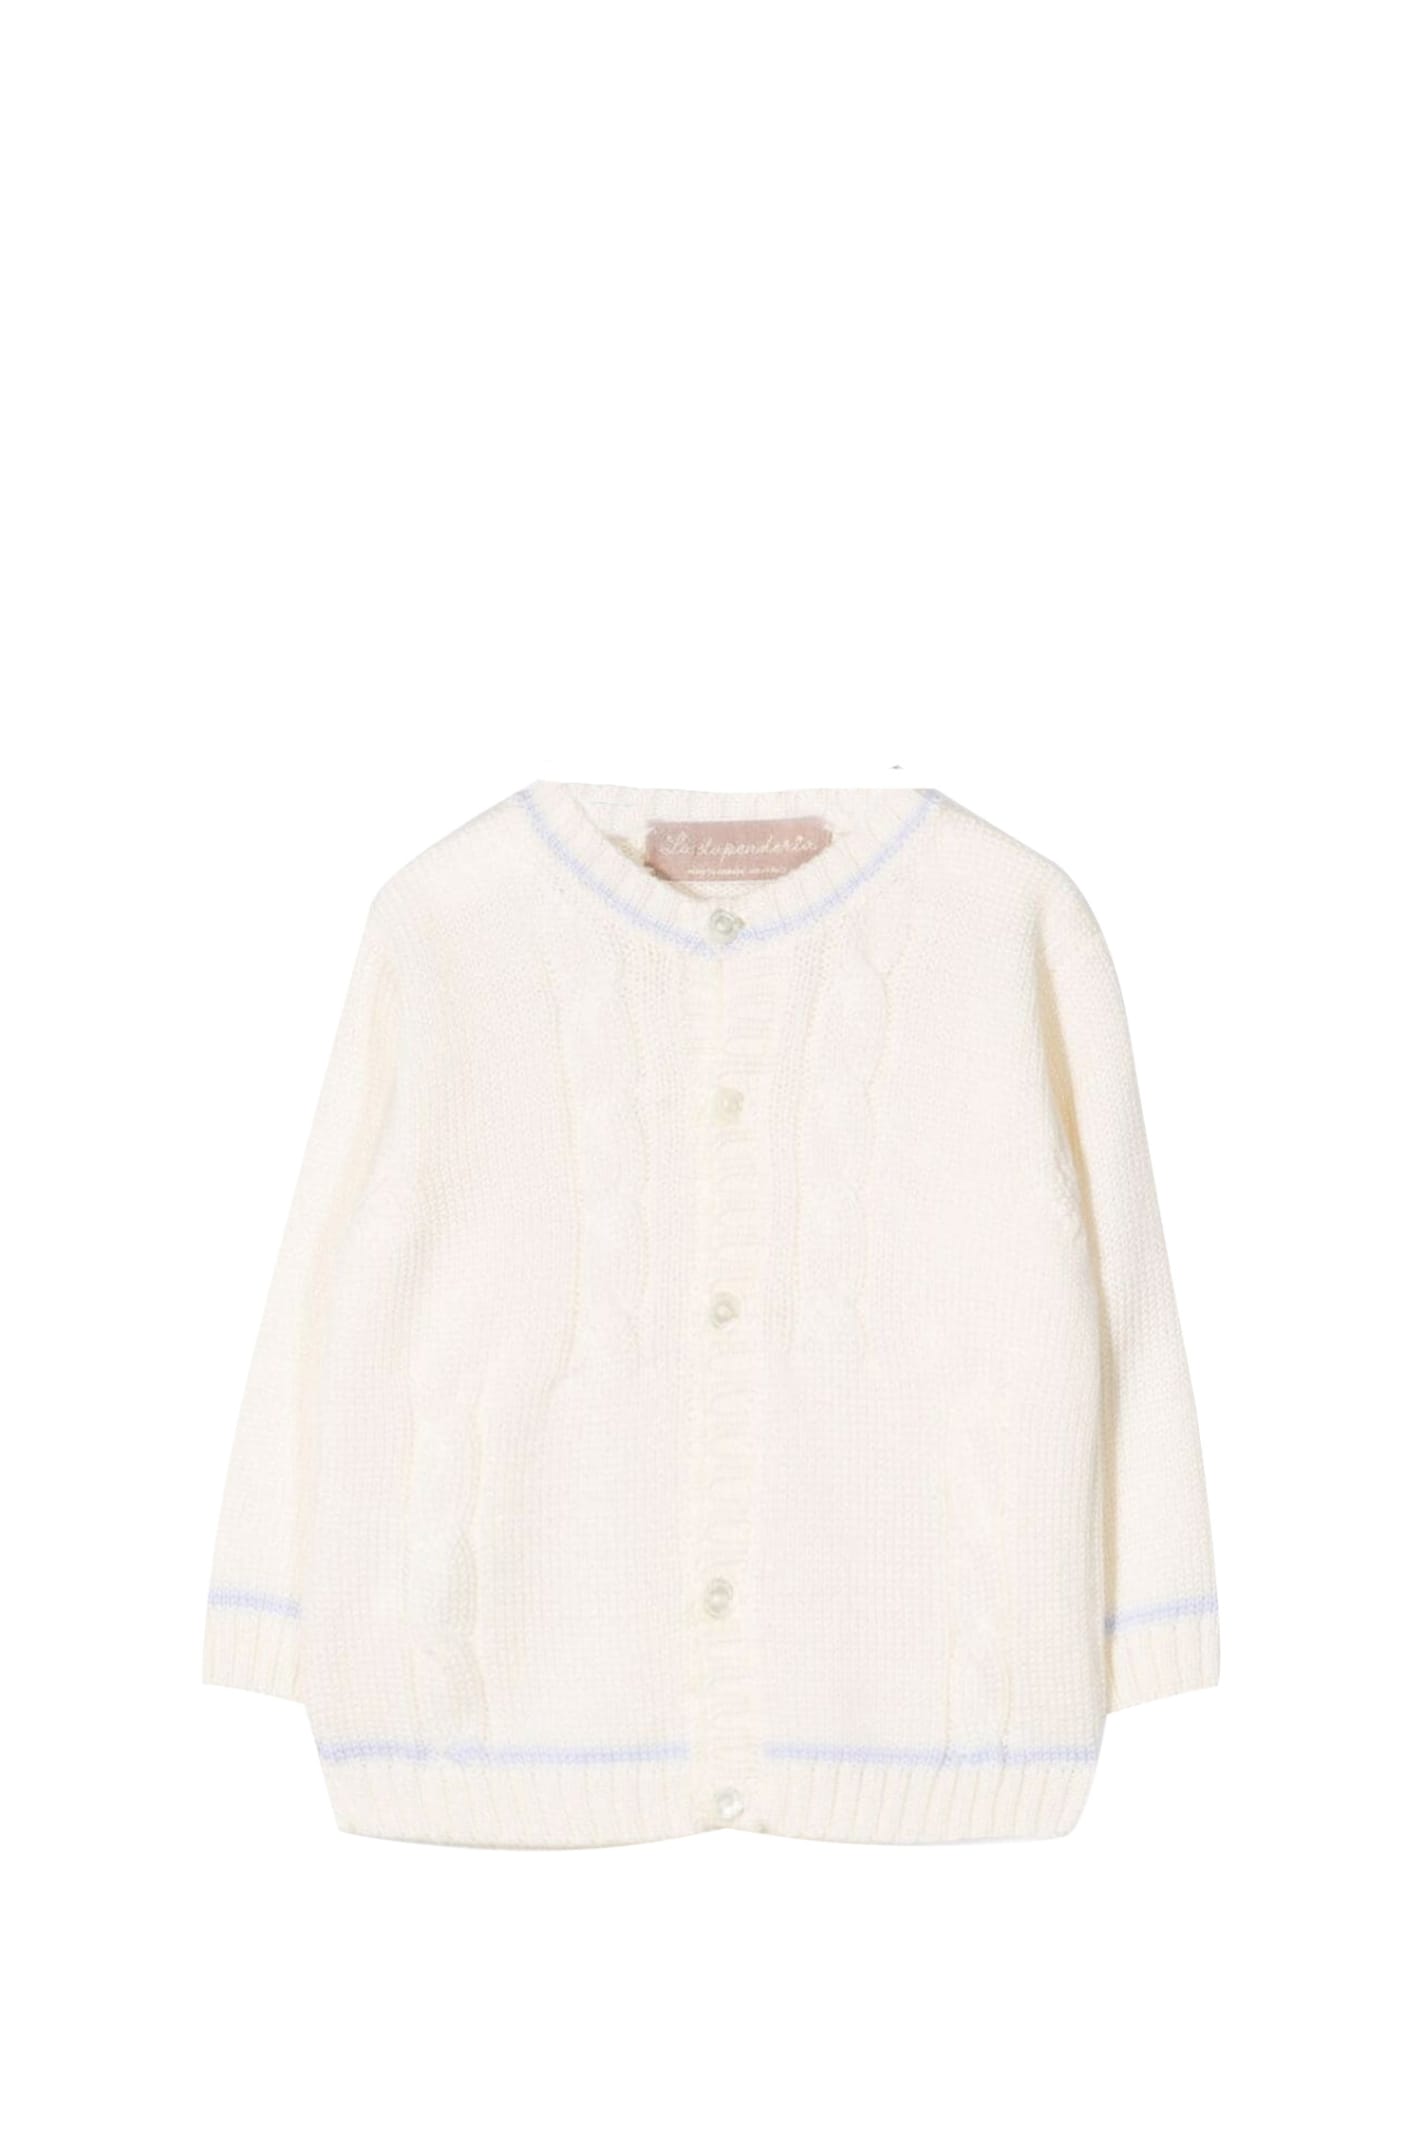 La Stupenderia Kids' Cashmere Sweater In White